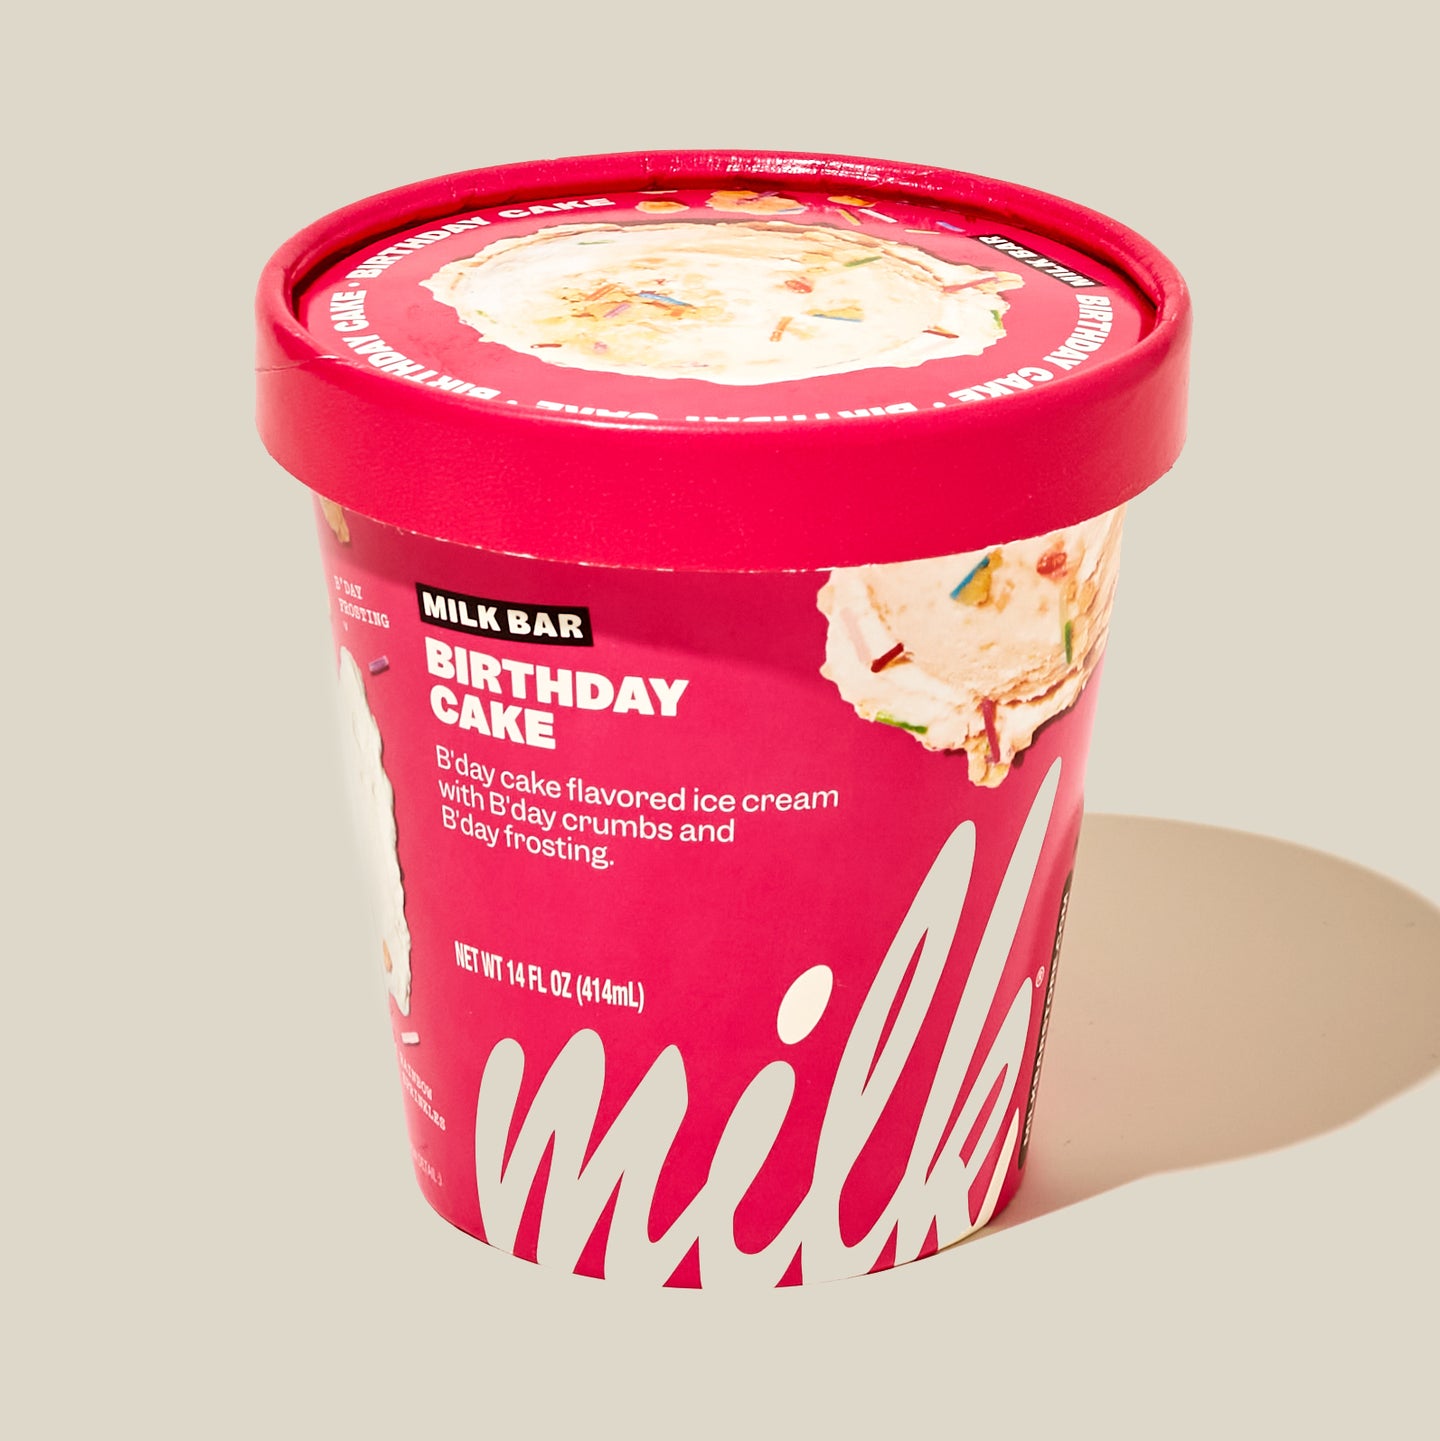 REVIEW: Milk Bar Ice Cream - The Impulsive Buy